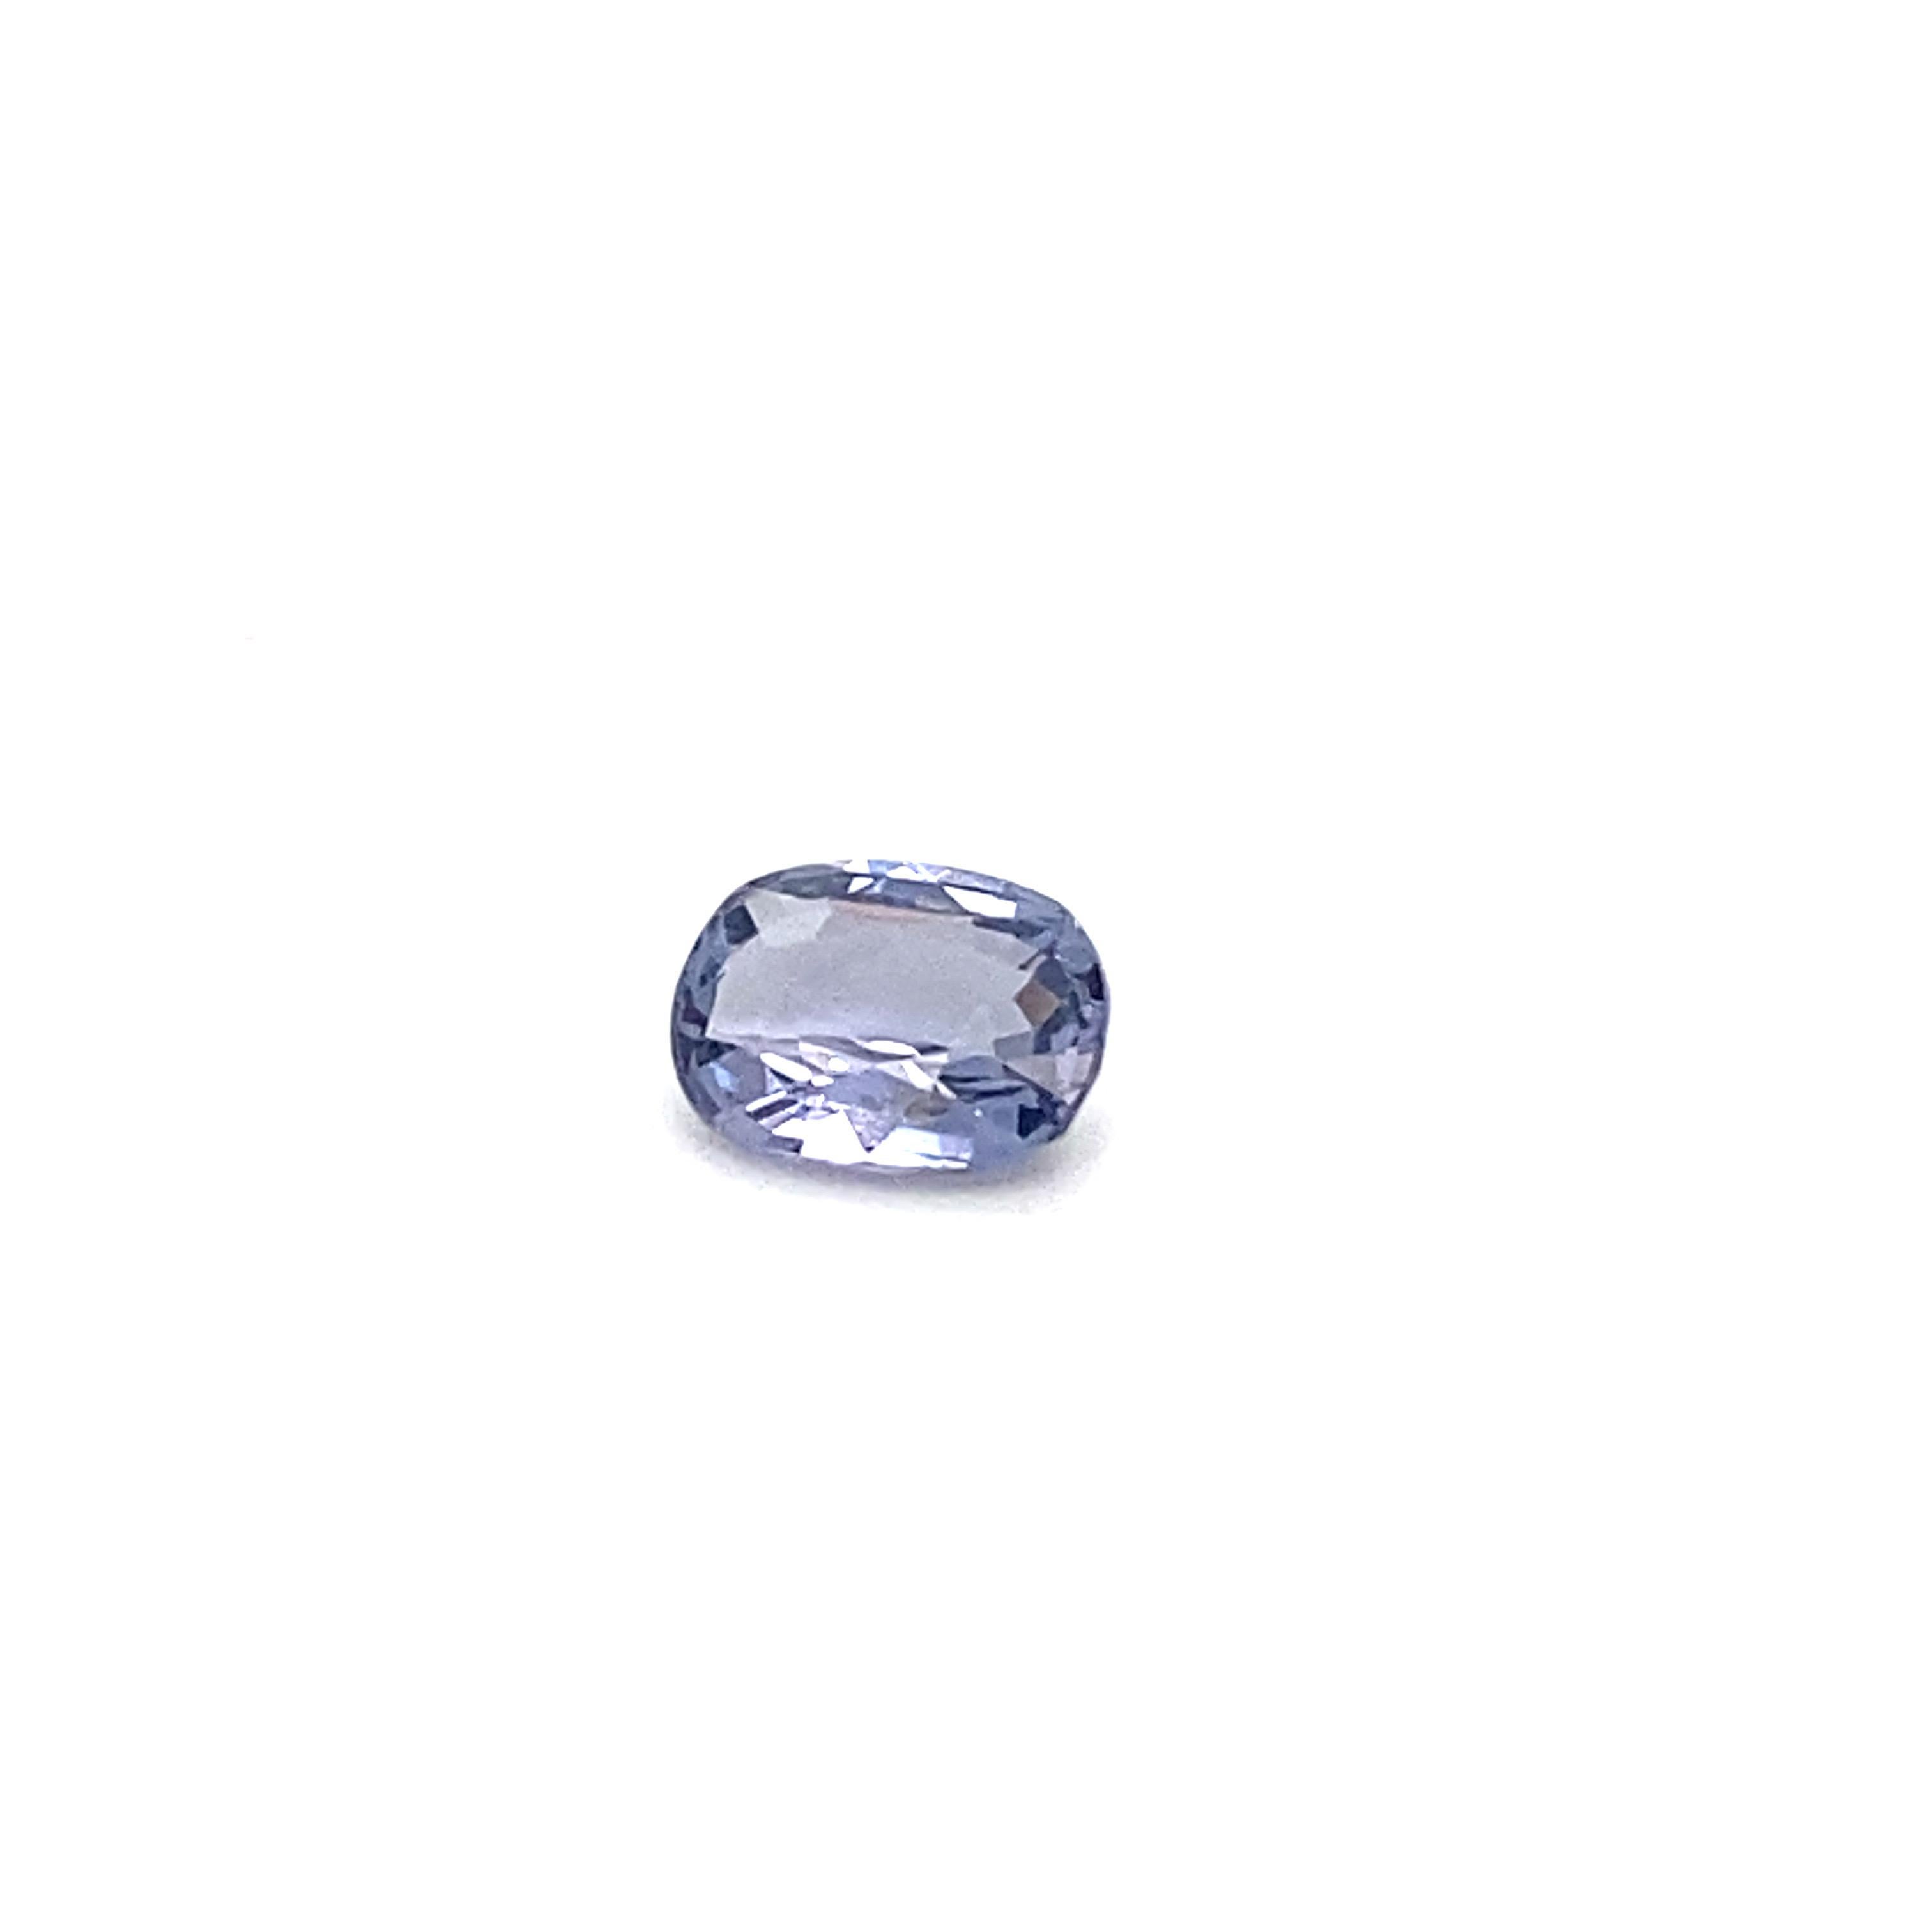 1.6 Carat Oval Shape Natural Violet Spinel Loose Gemstone For Sale 3